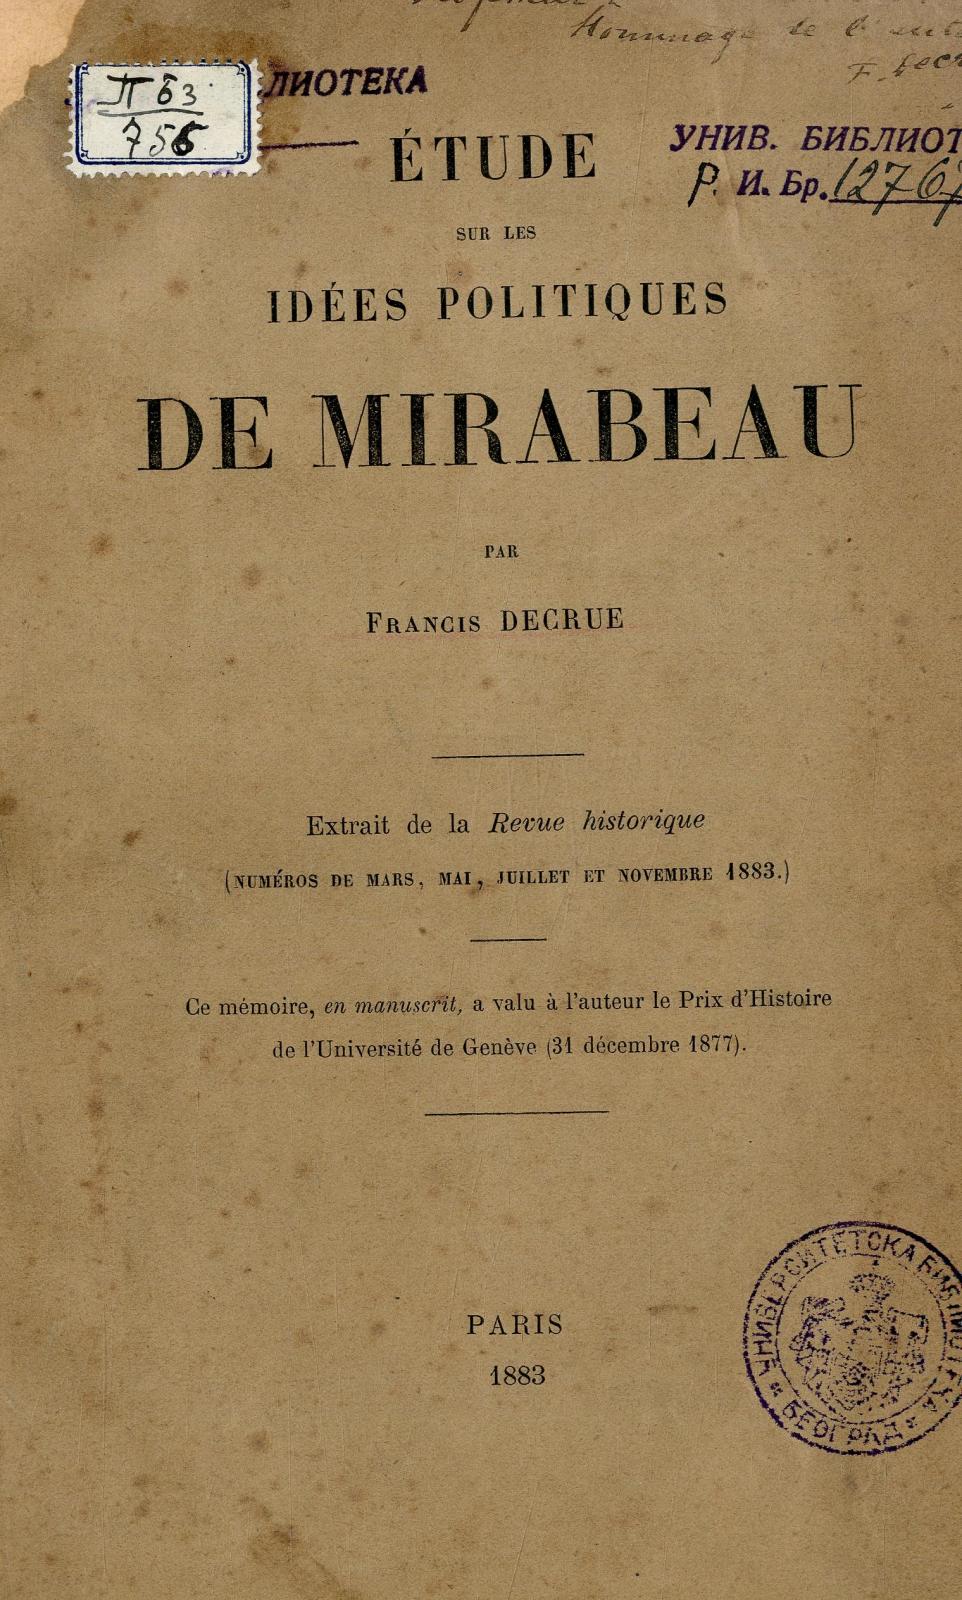 Étude sur les idées politiques de Mirabeau / par Francis Decrue